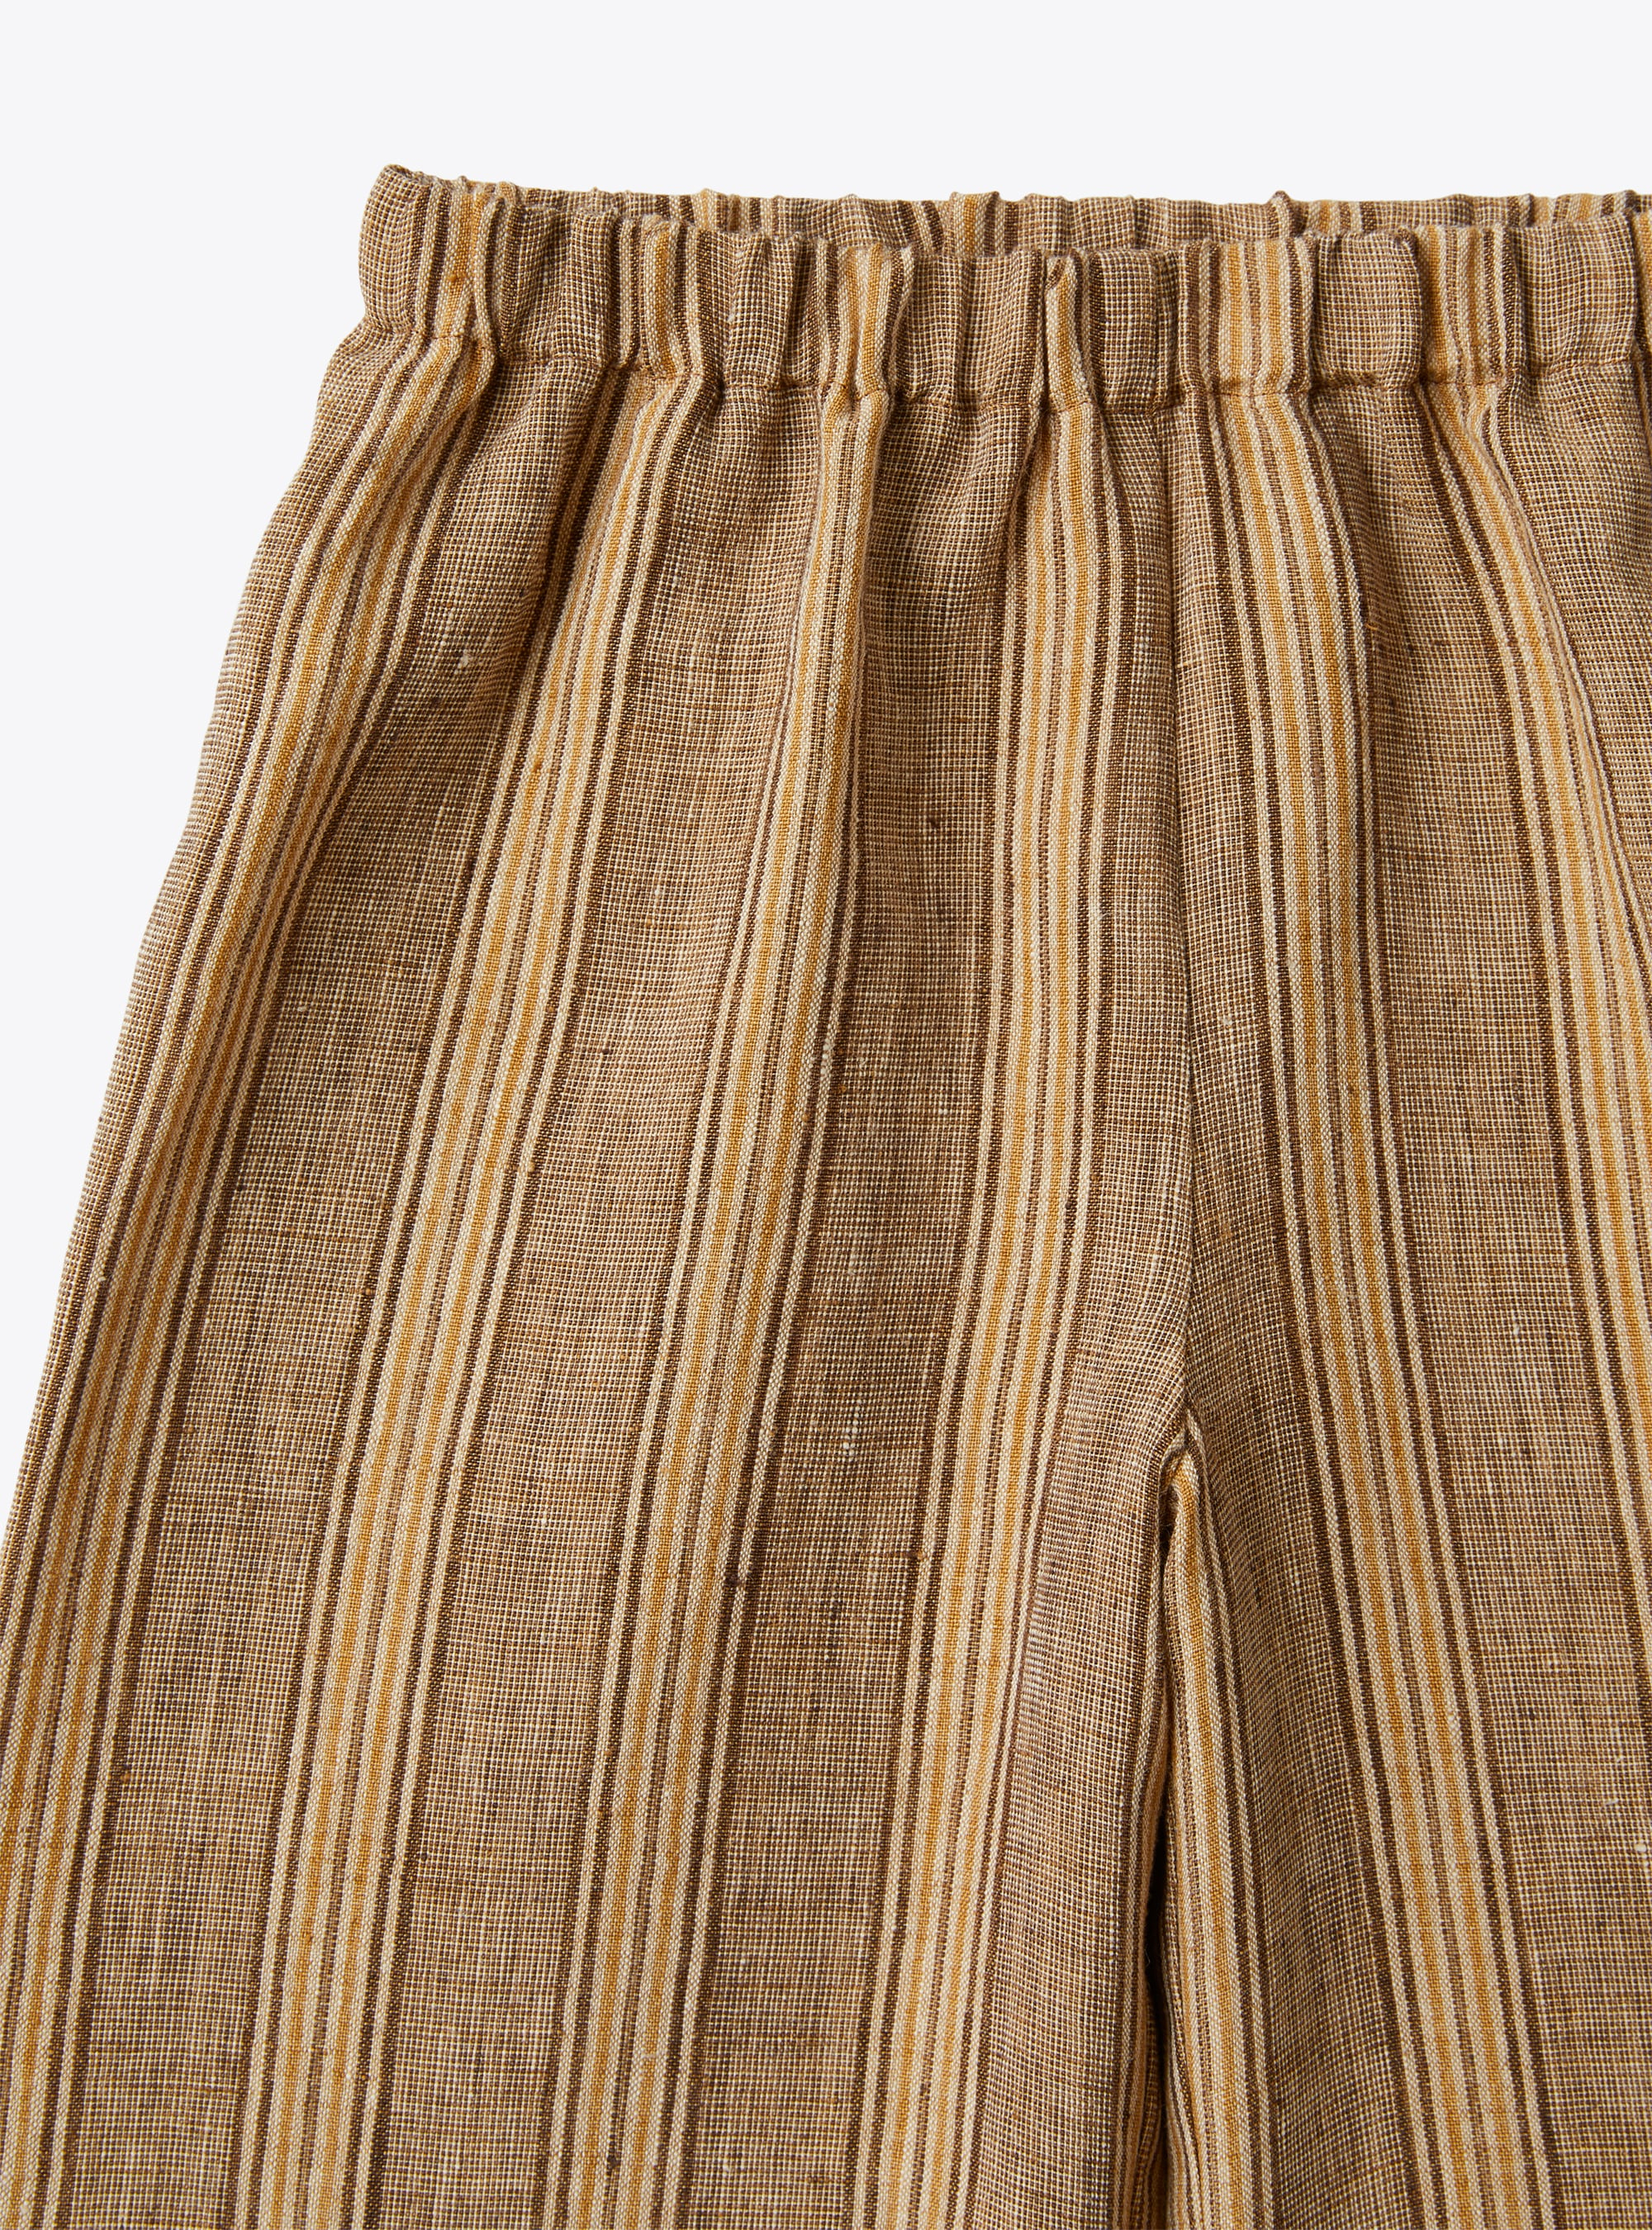 Pantalone capri in lino melange a righe color noce - Marrone | Il Gufo